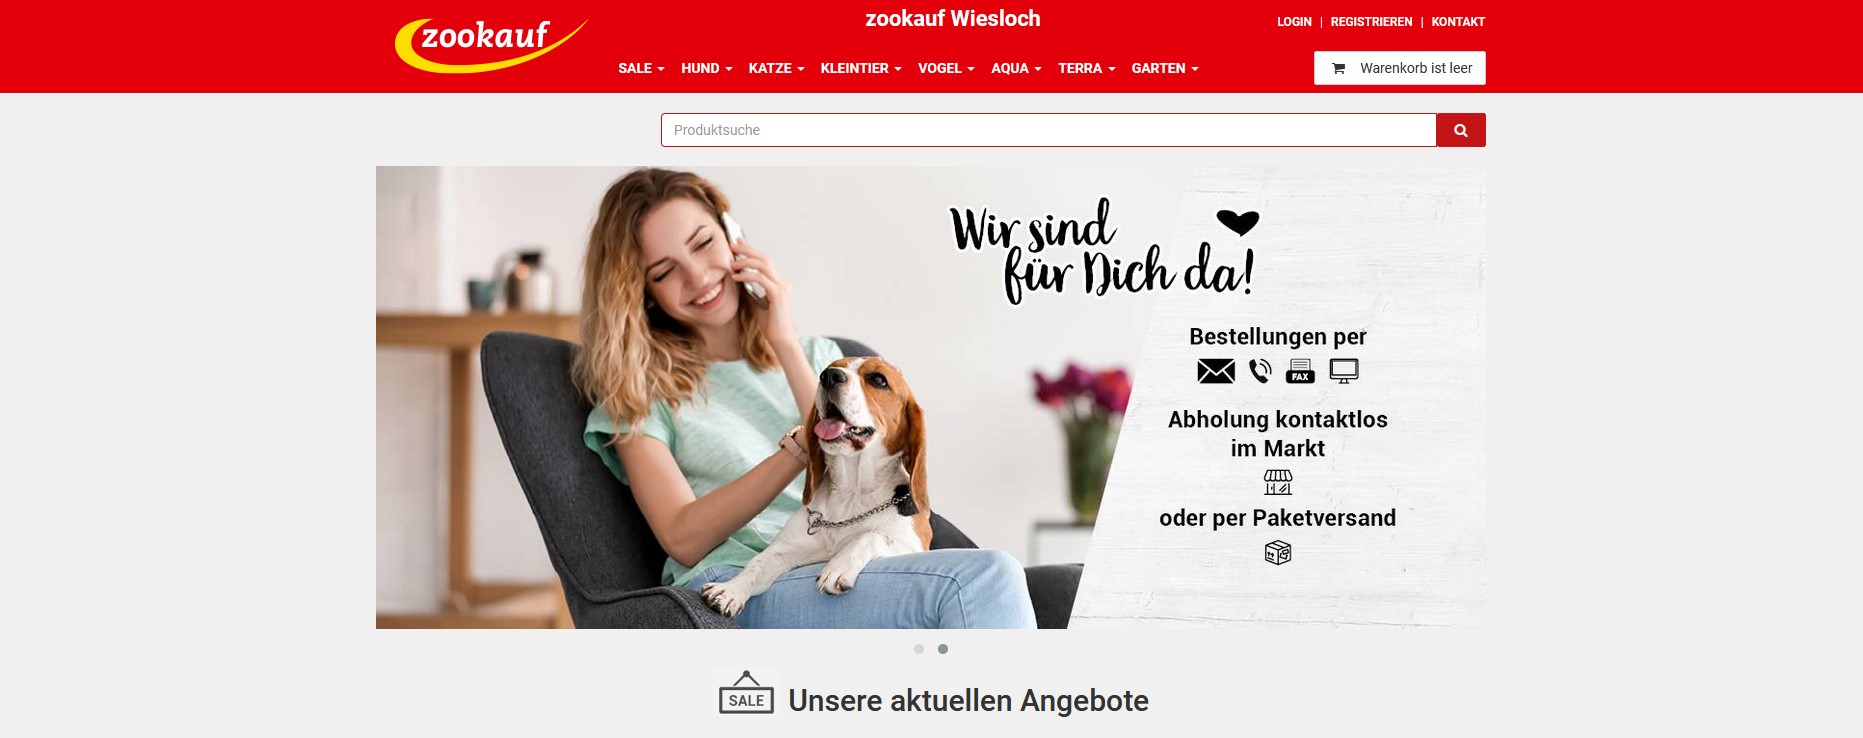 Online-Shop zookauf Wiesloch